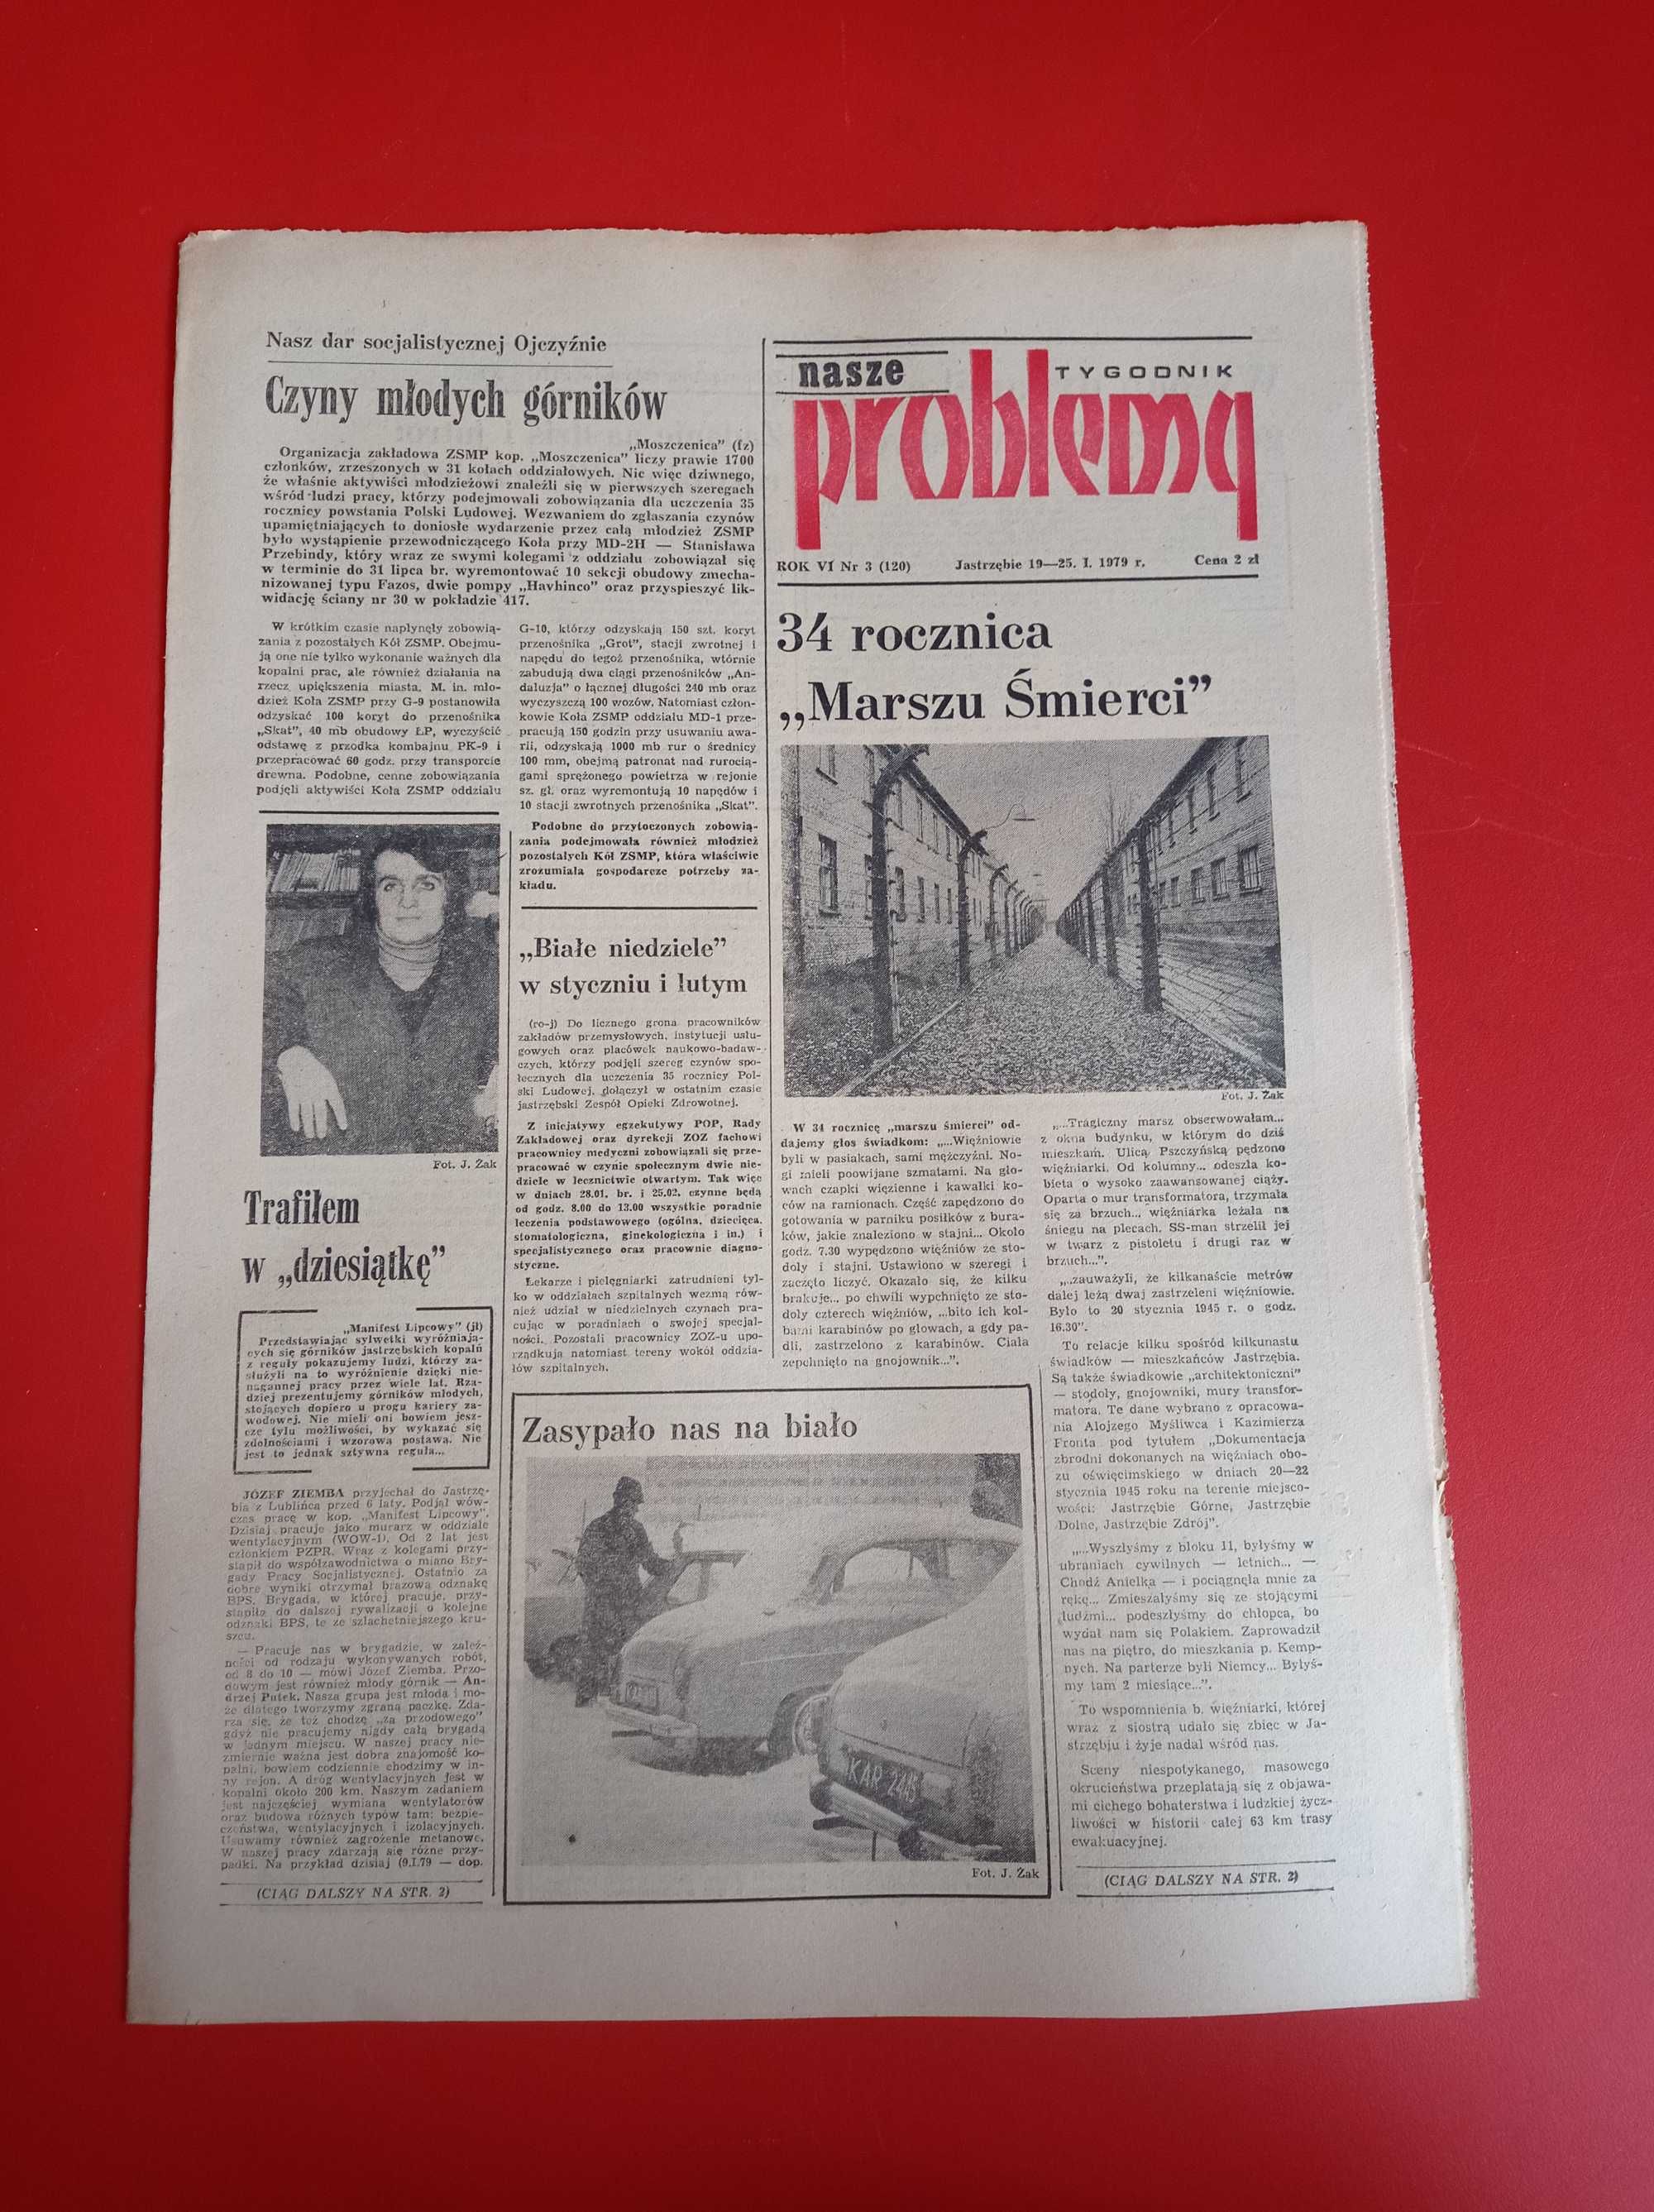 Nasze problemy, Jastrzębie, nr 3, 19-25 stycznia 1979